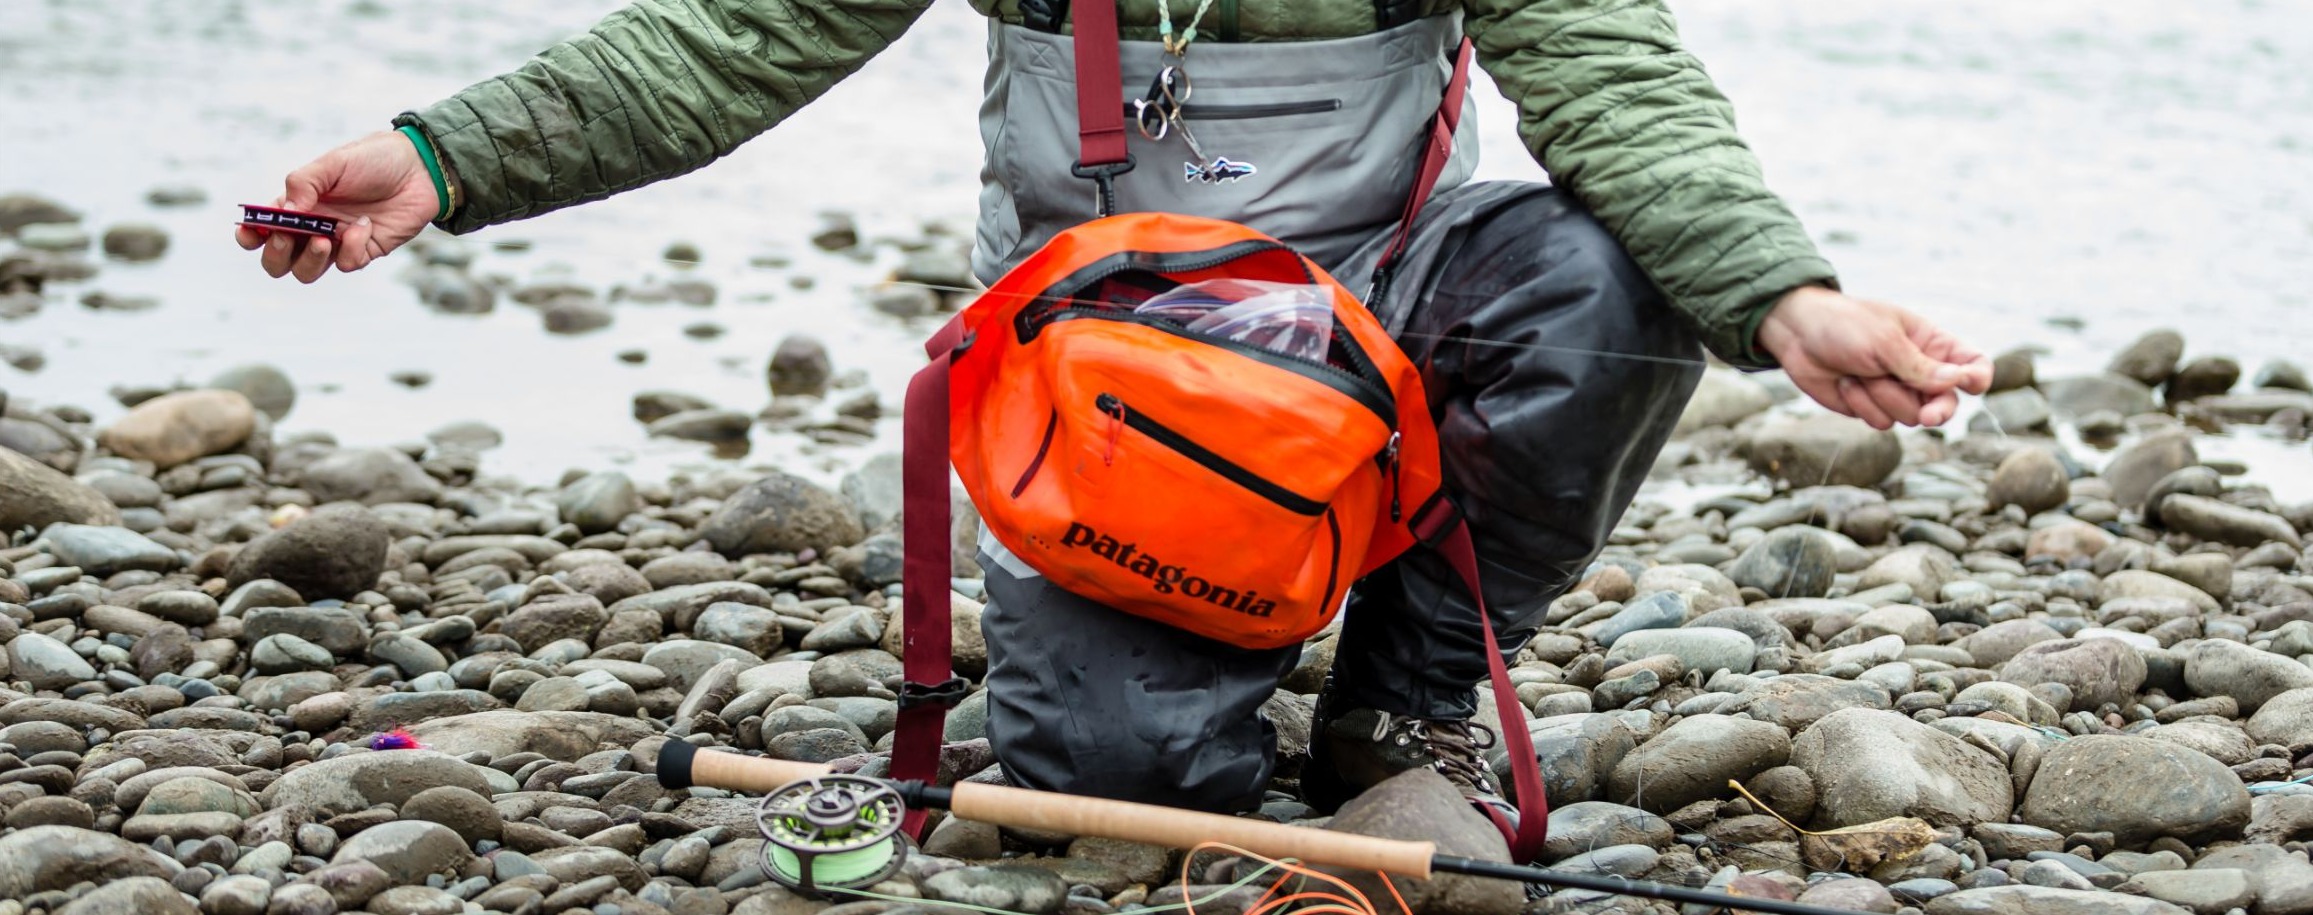 Patagonia Stormfront Roll Top Pack - Waterproof Backpack Rucksack